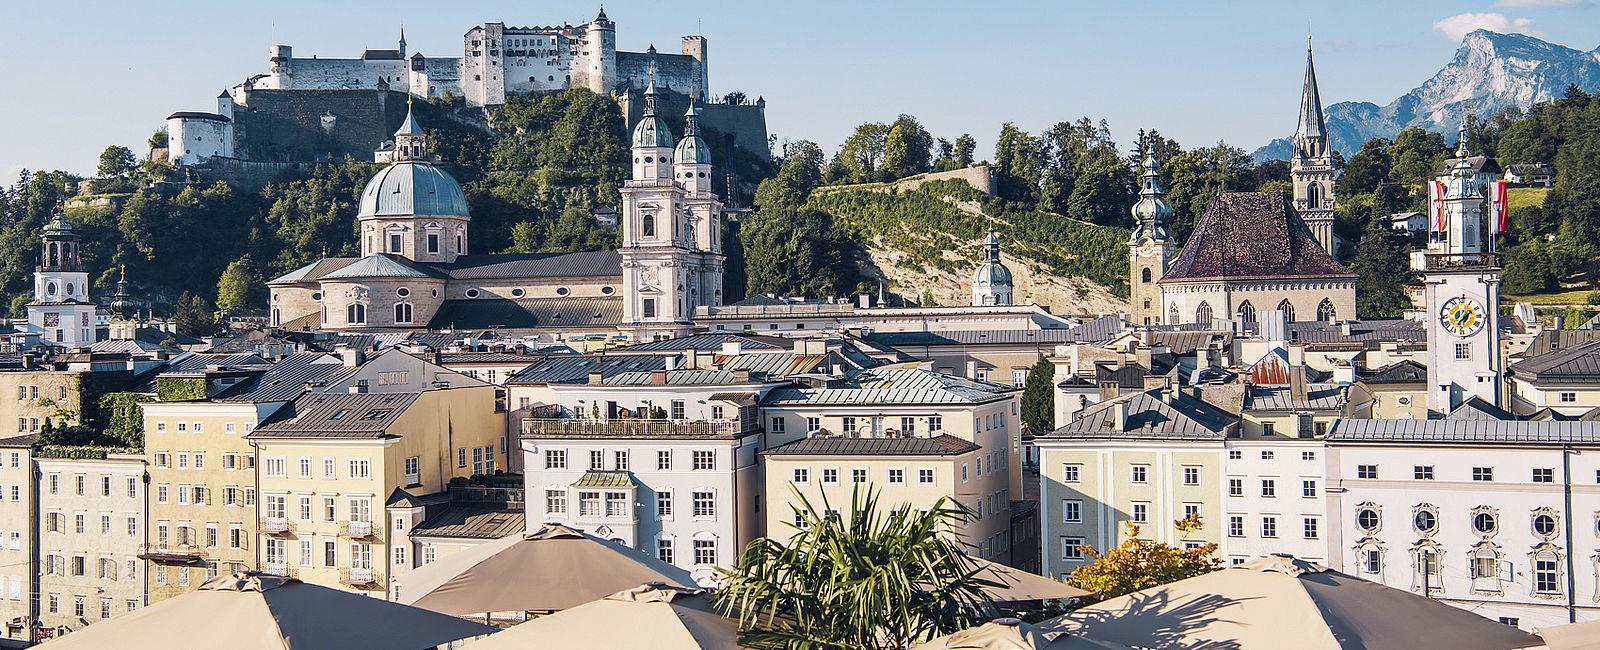 VERY SPECIAL HOTEL
 Hotel Stein, Salzburg 
 Hoteljuwel mit beeindruckender Aussicht 